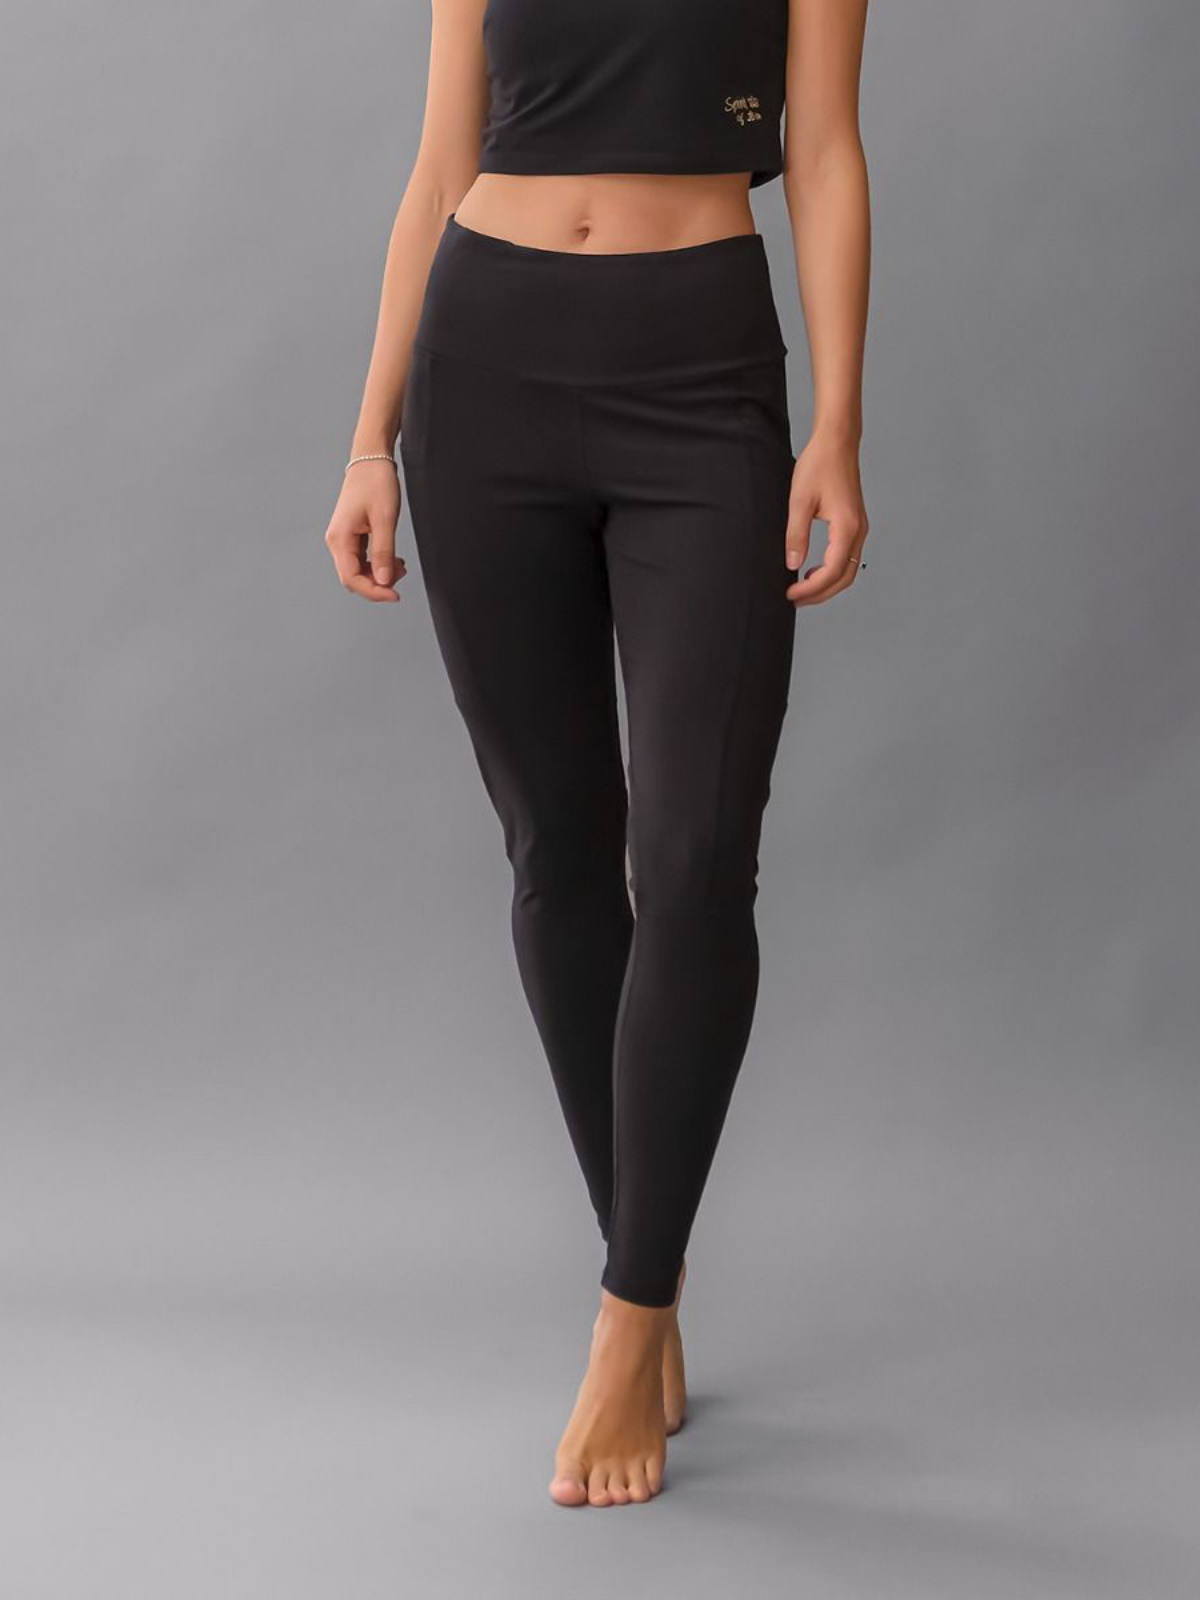 Yoga Pants | Spirit of Om Yoga Leggings Yoga and Run Black